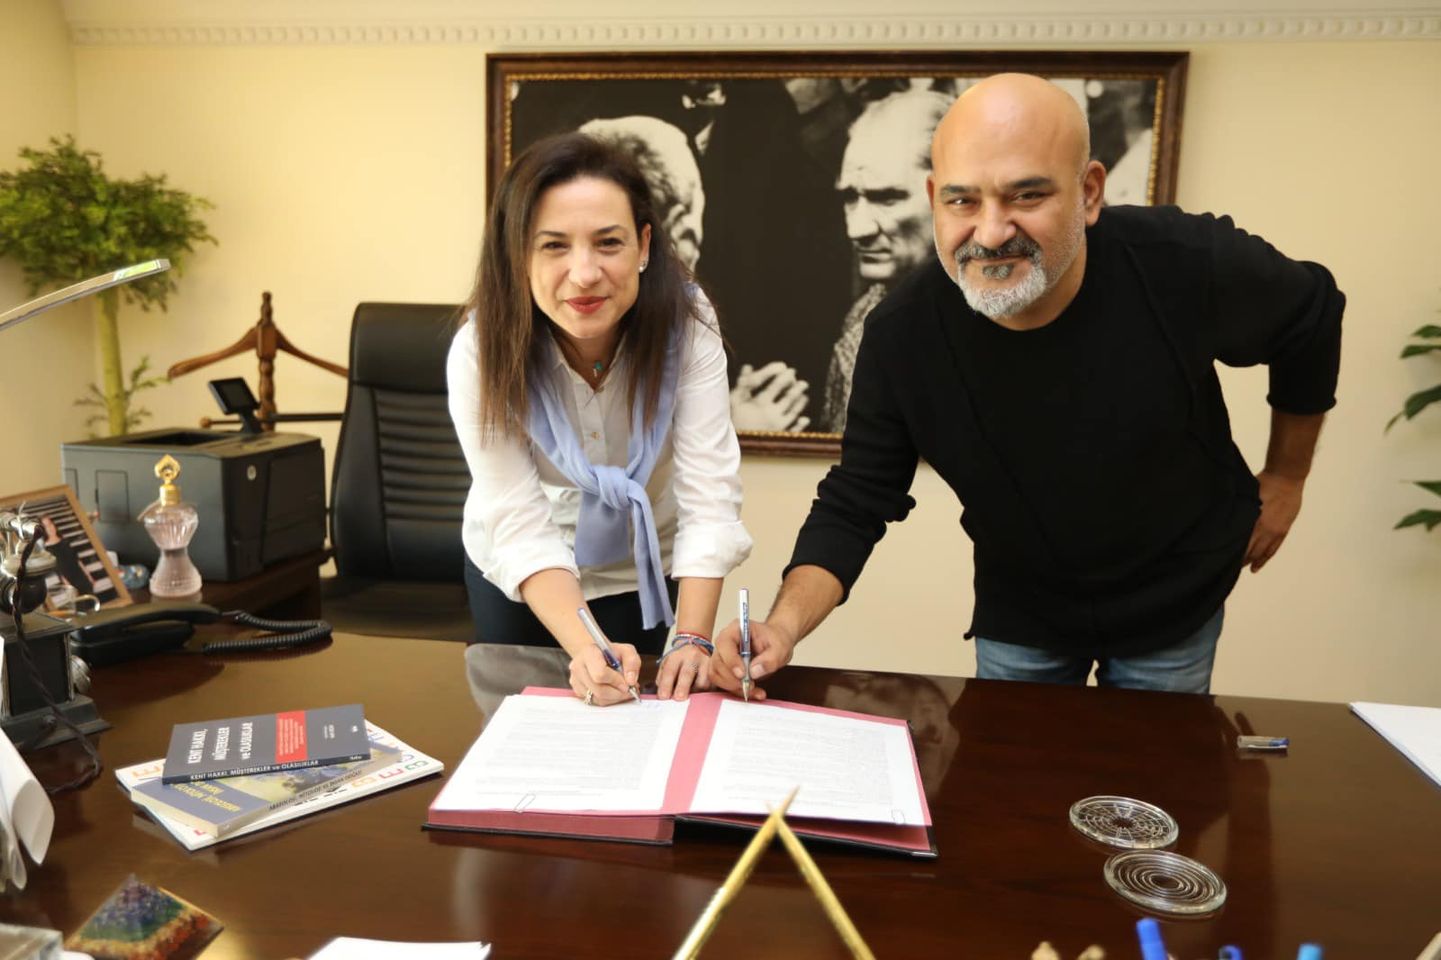 Selçuk Belediyesi ve Teos Kültür ve Sanat Derneği İzmir'in kültürel mirasını güçlendirmek için yenilikçi bir iş birliği başlattı.